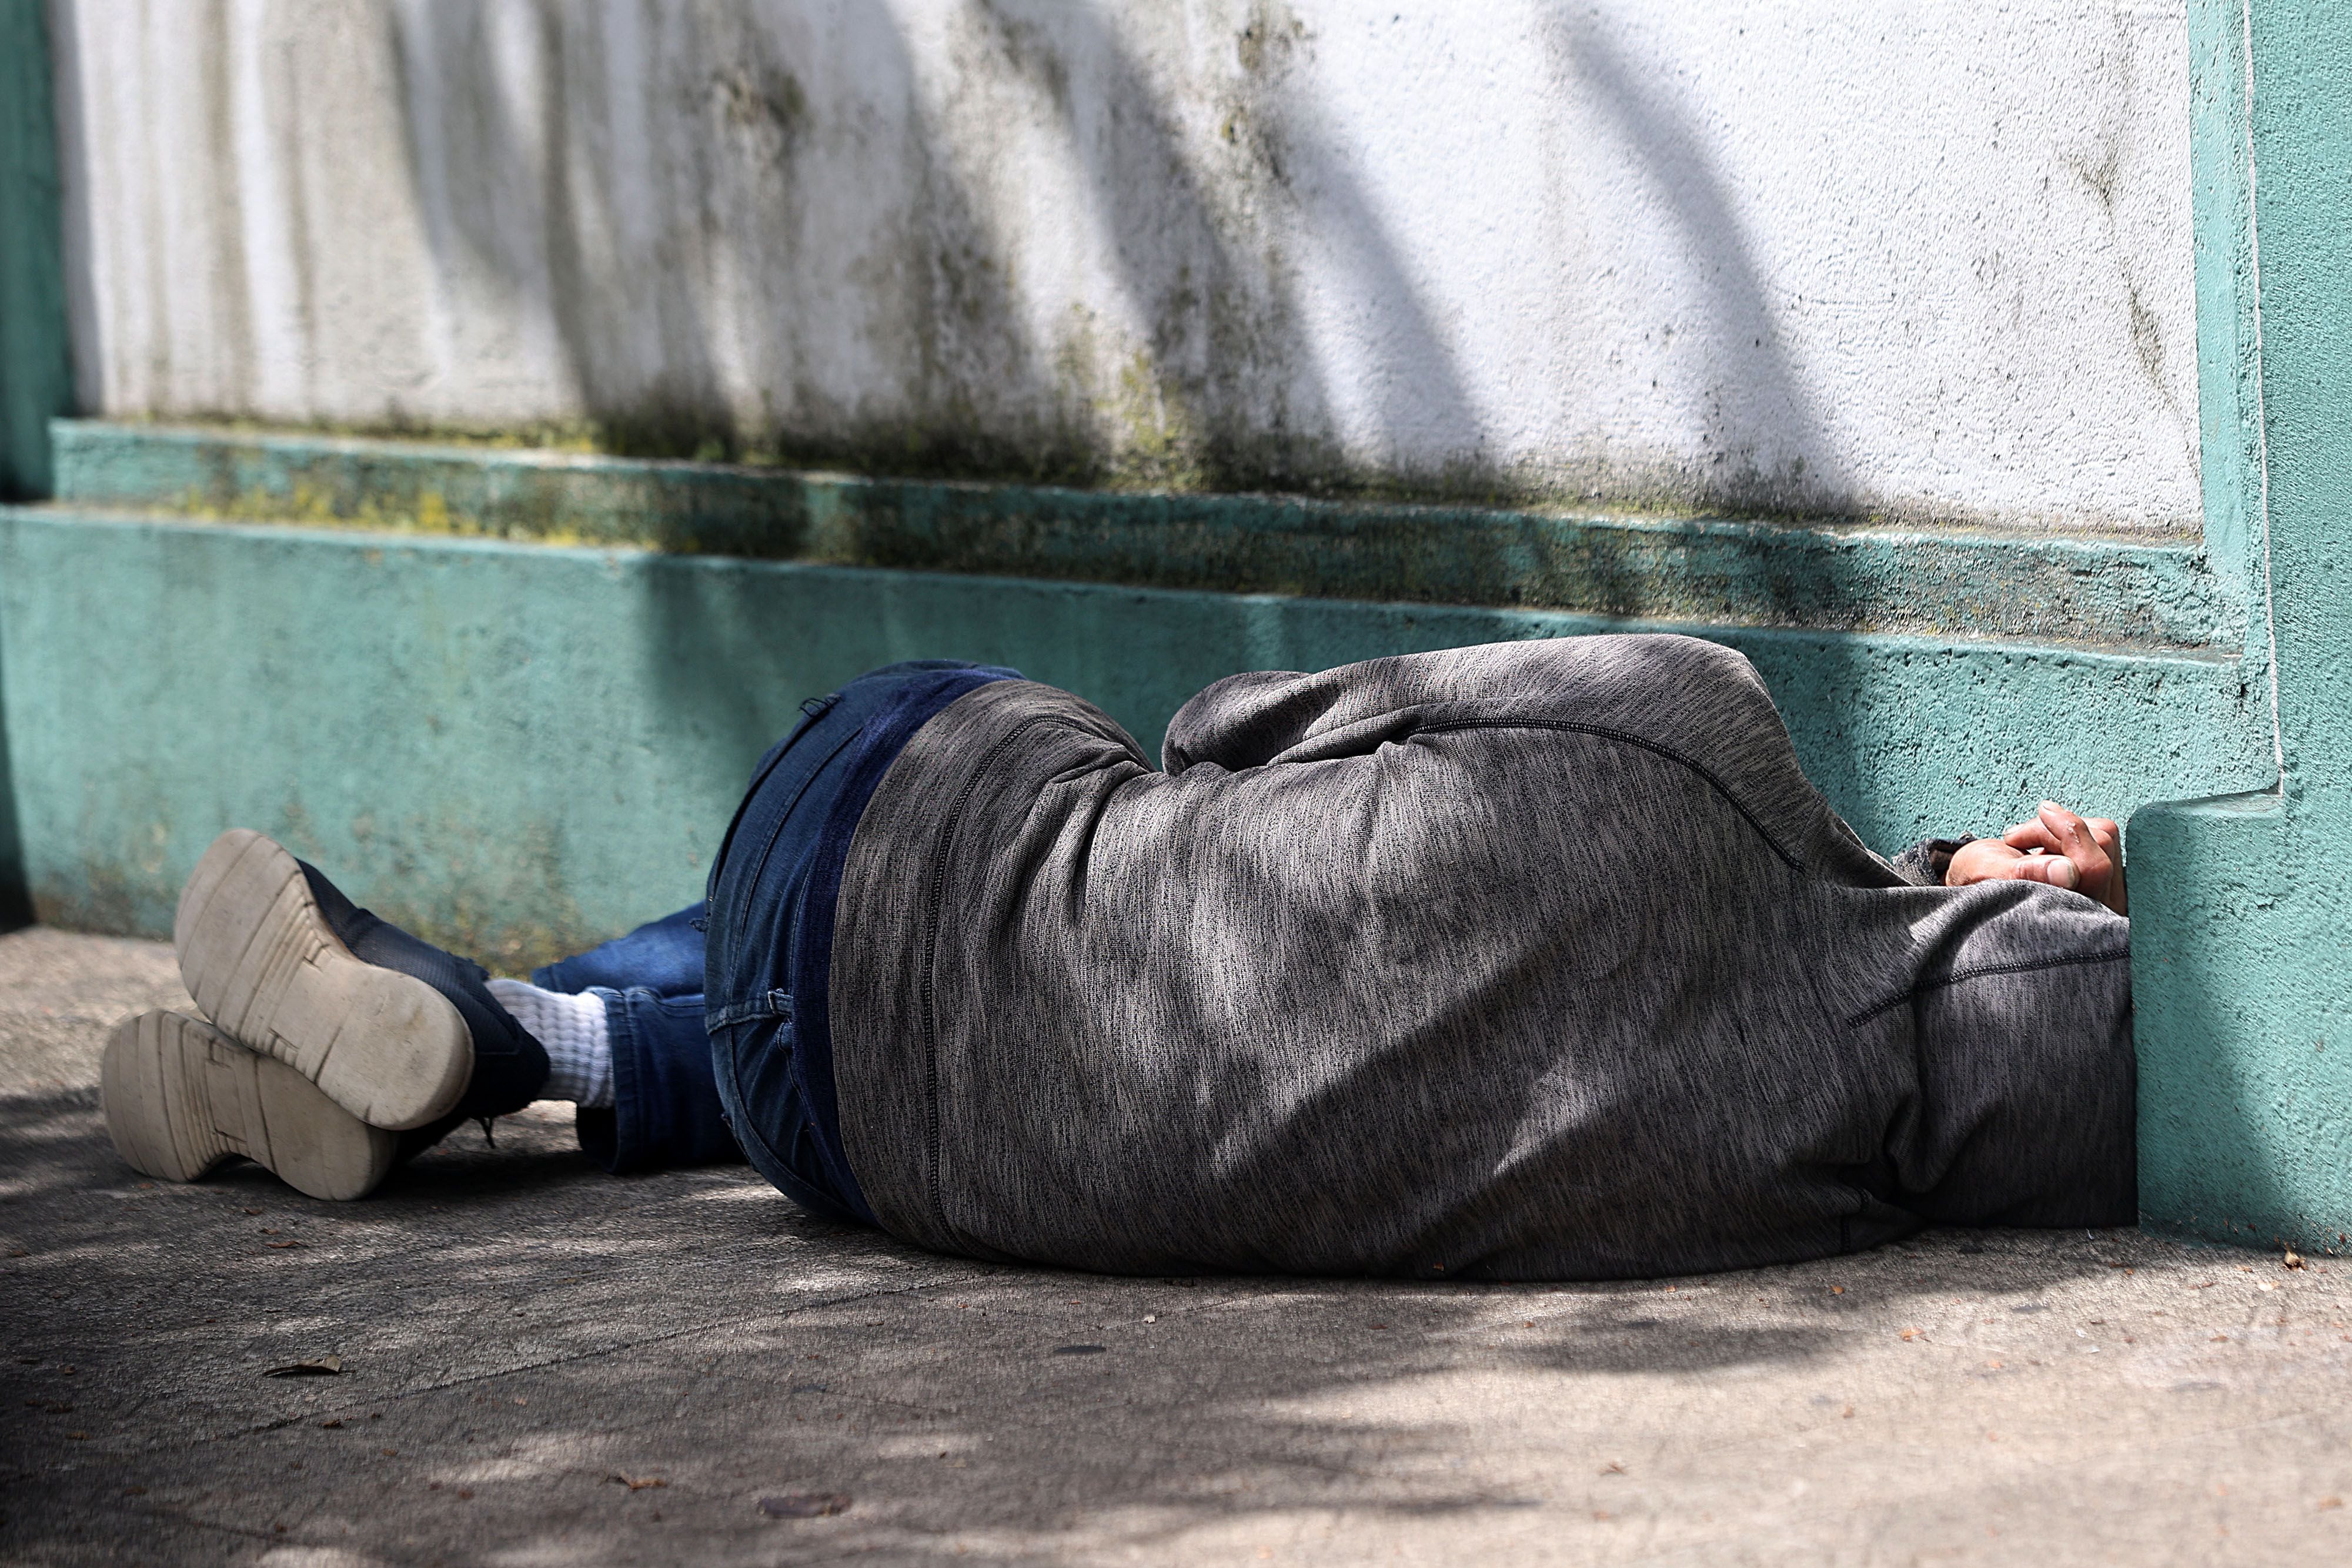 San José, avenida 20. Habitante de calle duerme en la acera de la vía pública. 